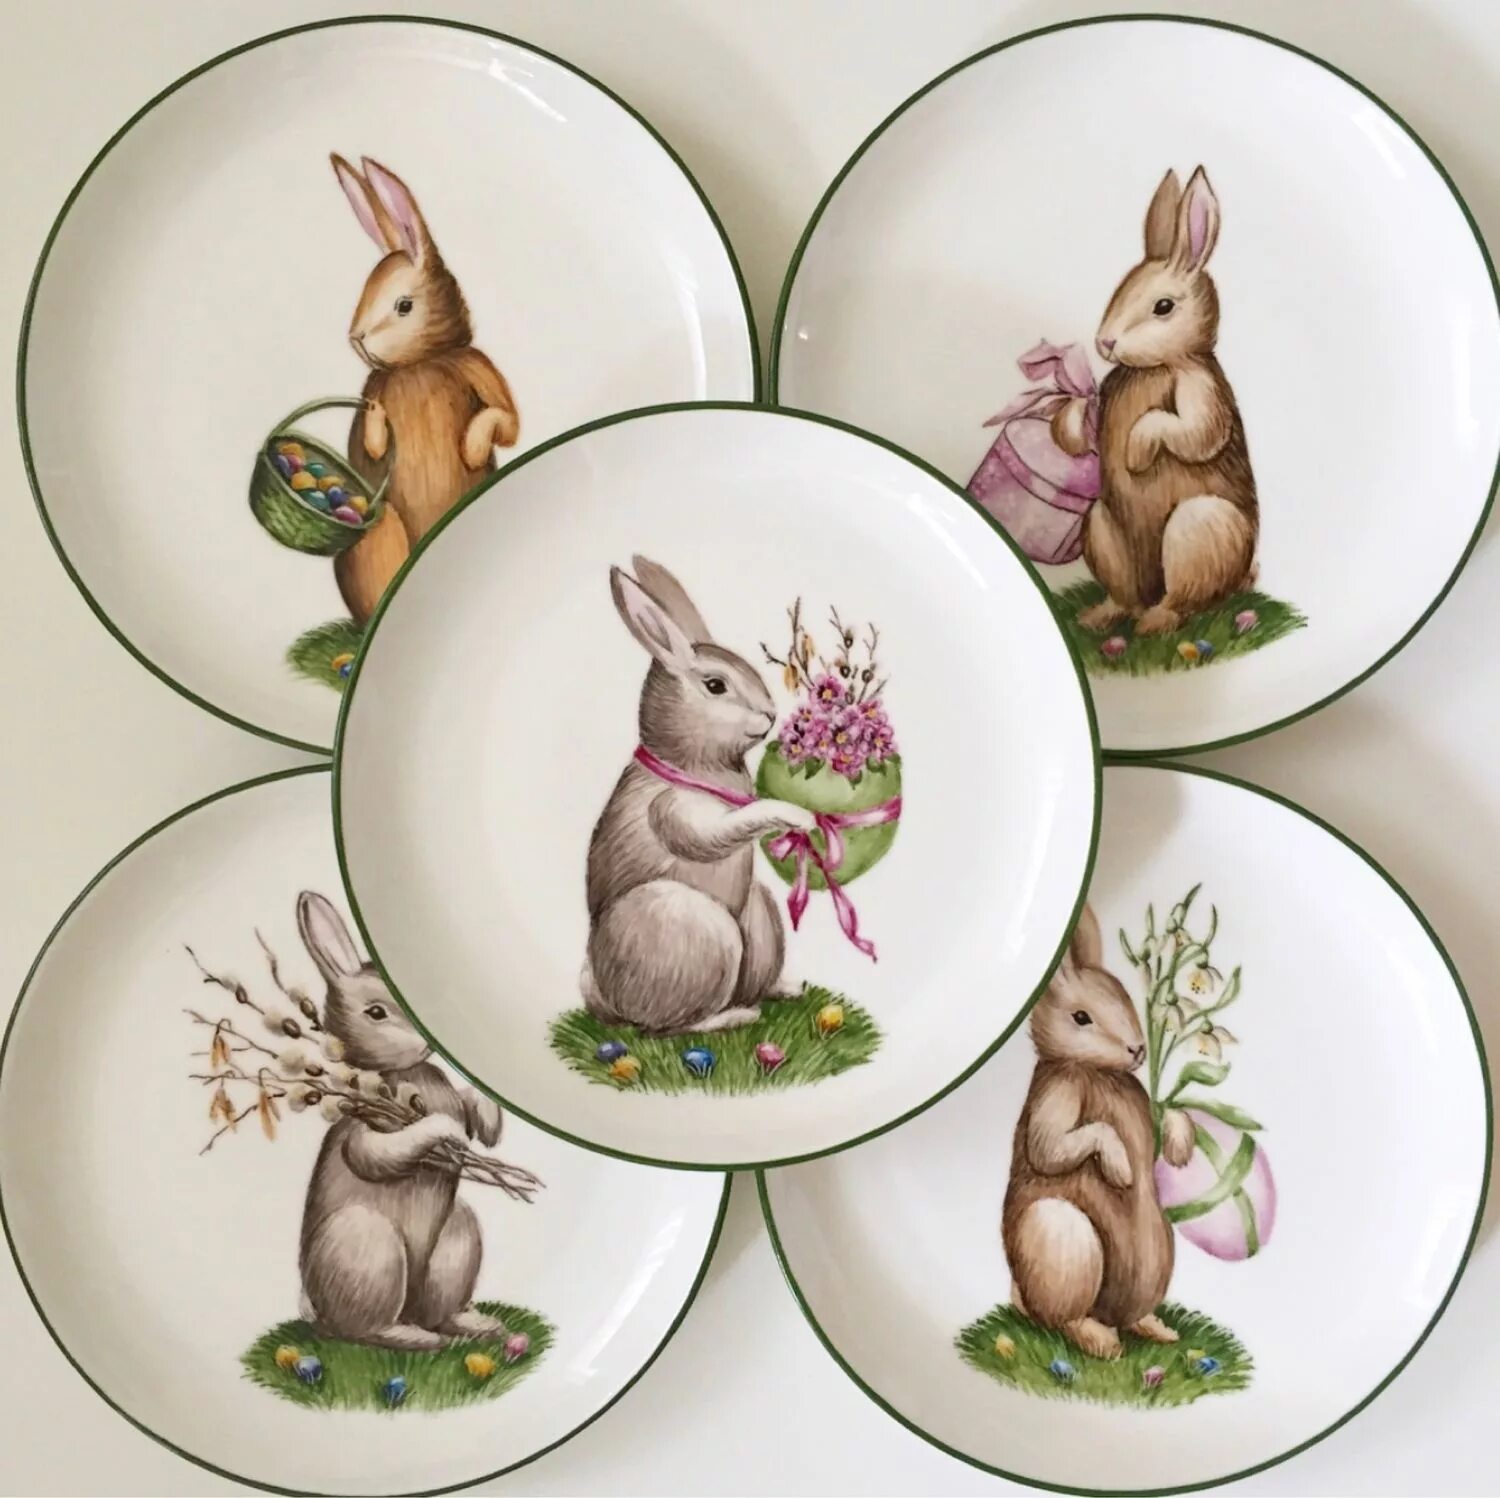 Тарелка с зайчиками. Тарелка «заяц». Декоративная тарелка с зайцами. Пасхальные тарелки с зайцами. Пасхальная посуда с кроликами.